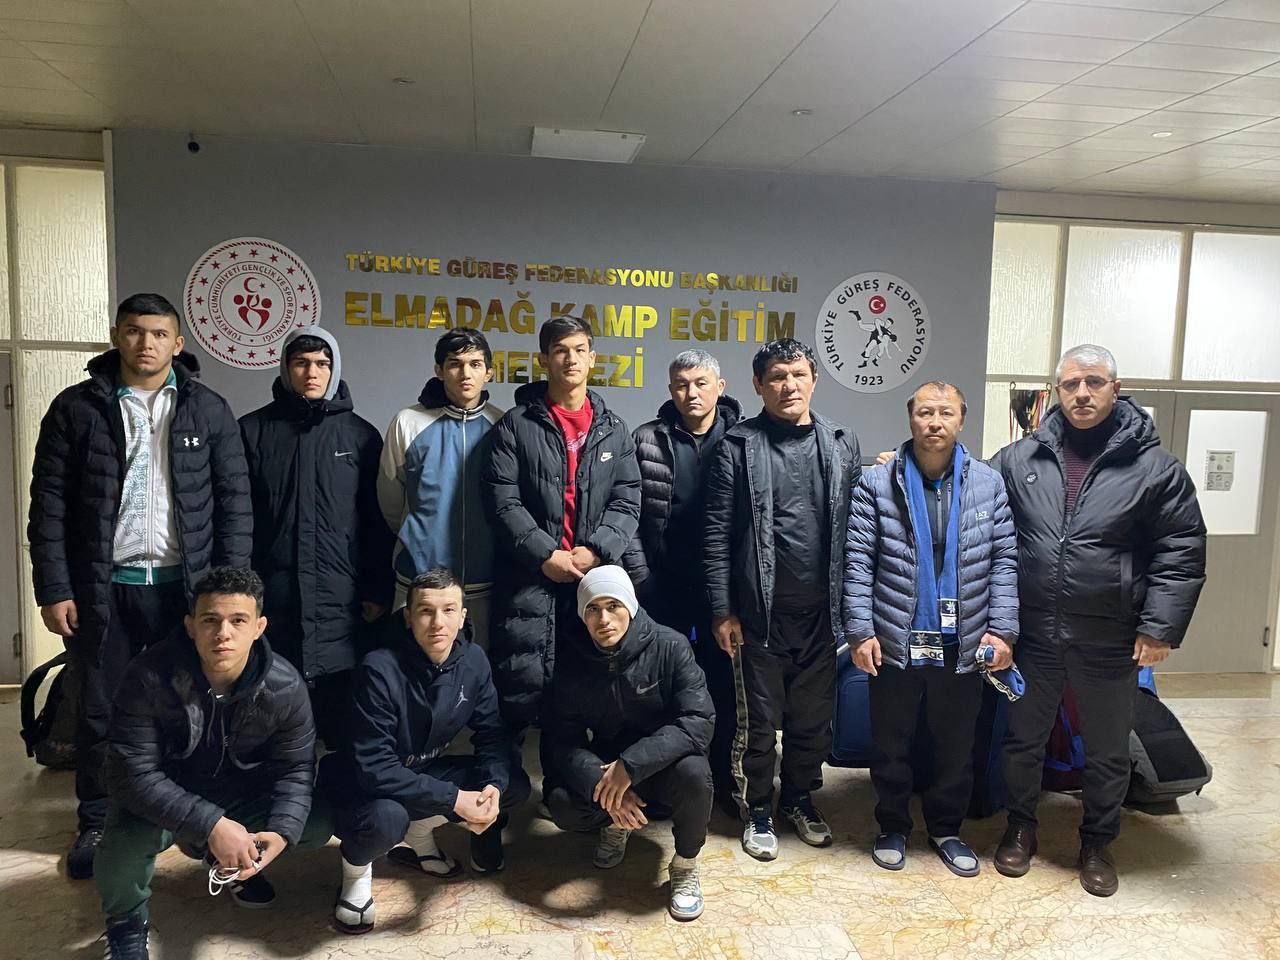 Узбекских спортсменов в Турции эвакуировали из очага землетрясения